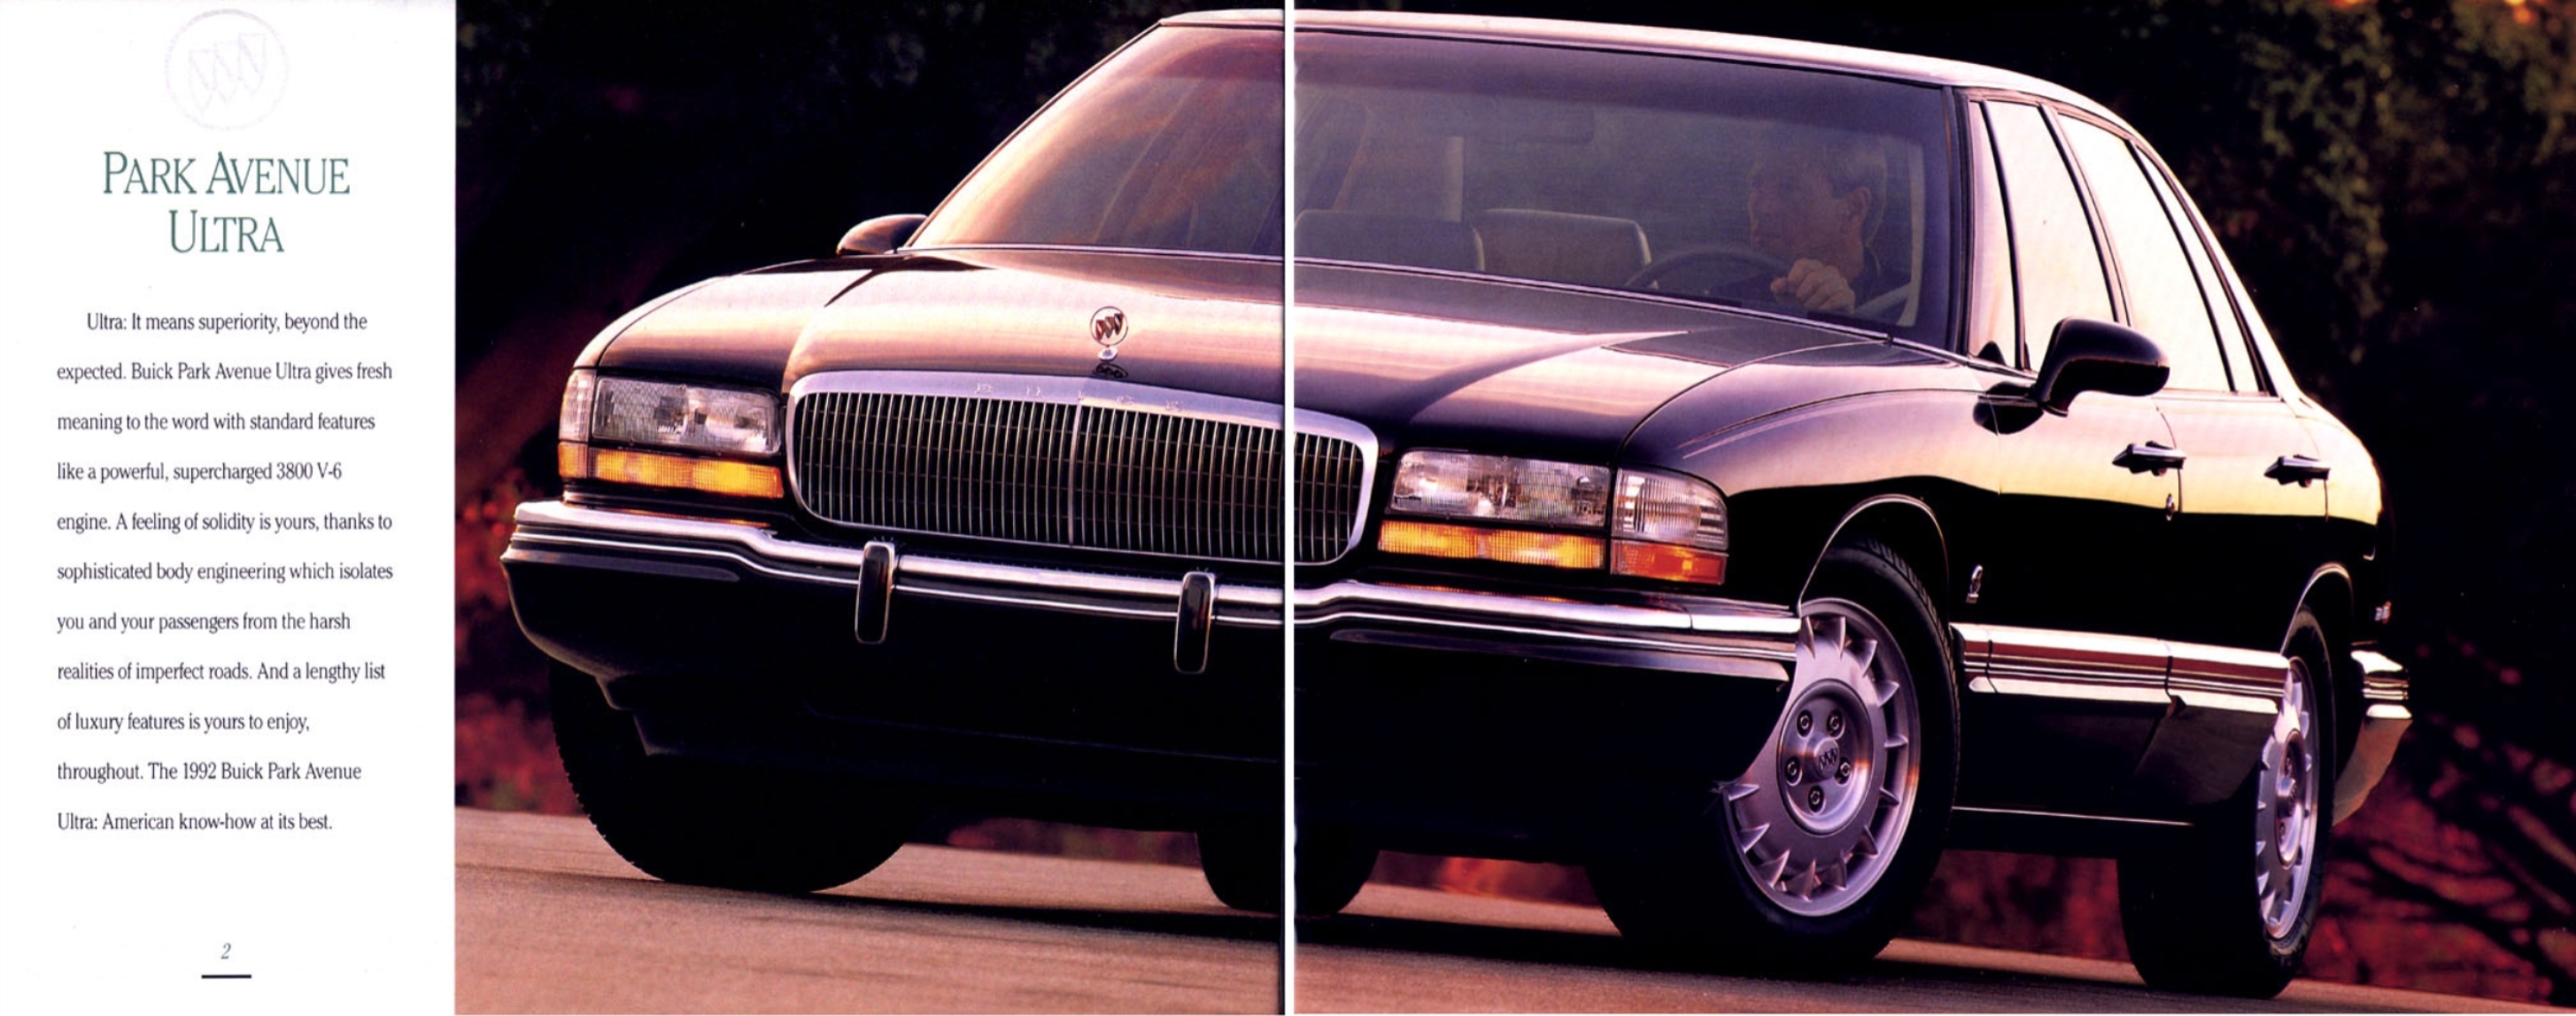 1992 Buick Full Line-02-03